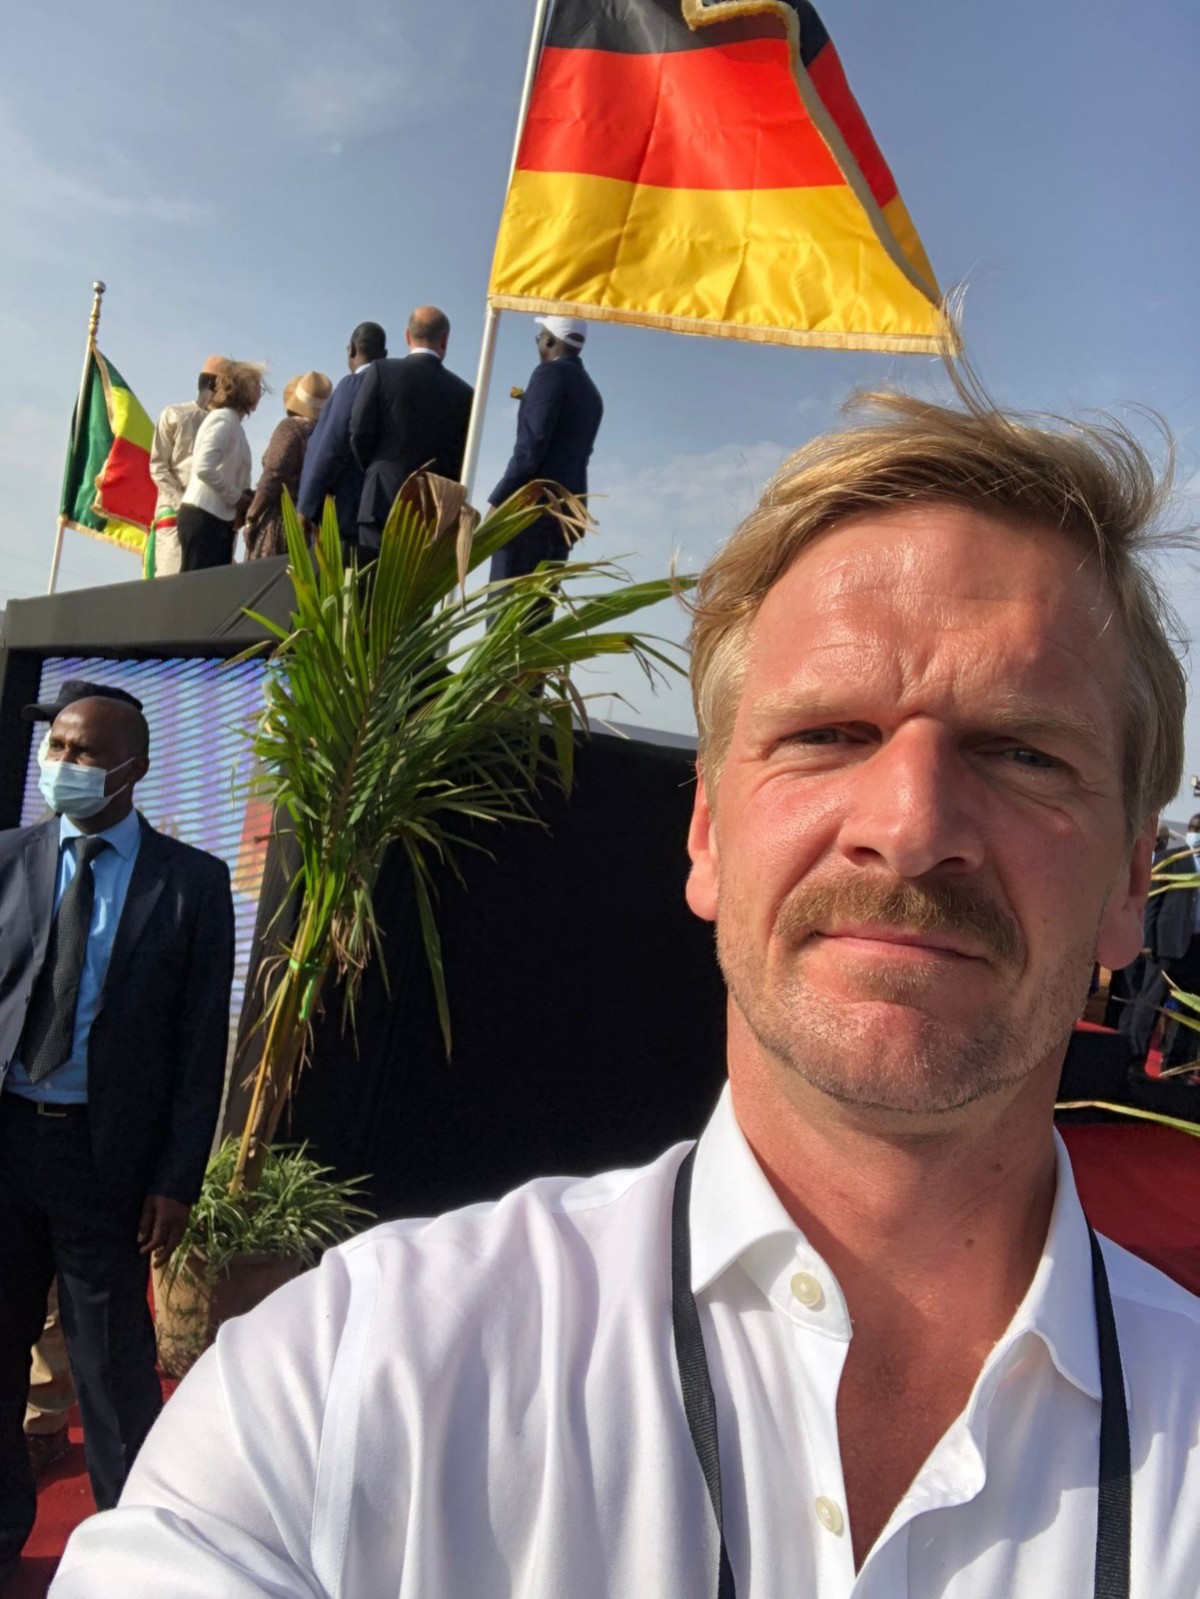 20220523-ec-Gordon Repinski-Gordon Repinski begleitet Olaf Scholz auf seiner Afrikareise nach Senegal, Niger und Südafrika